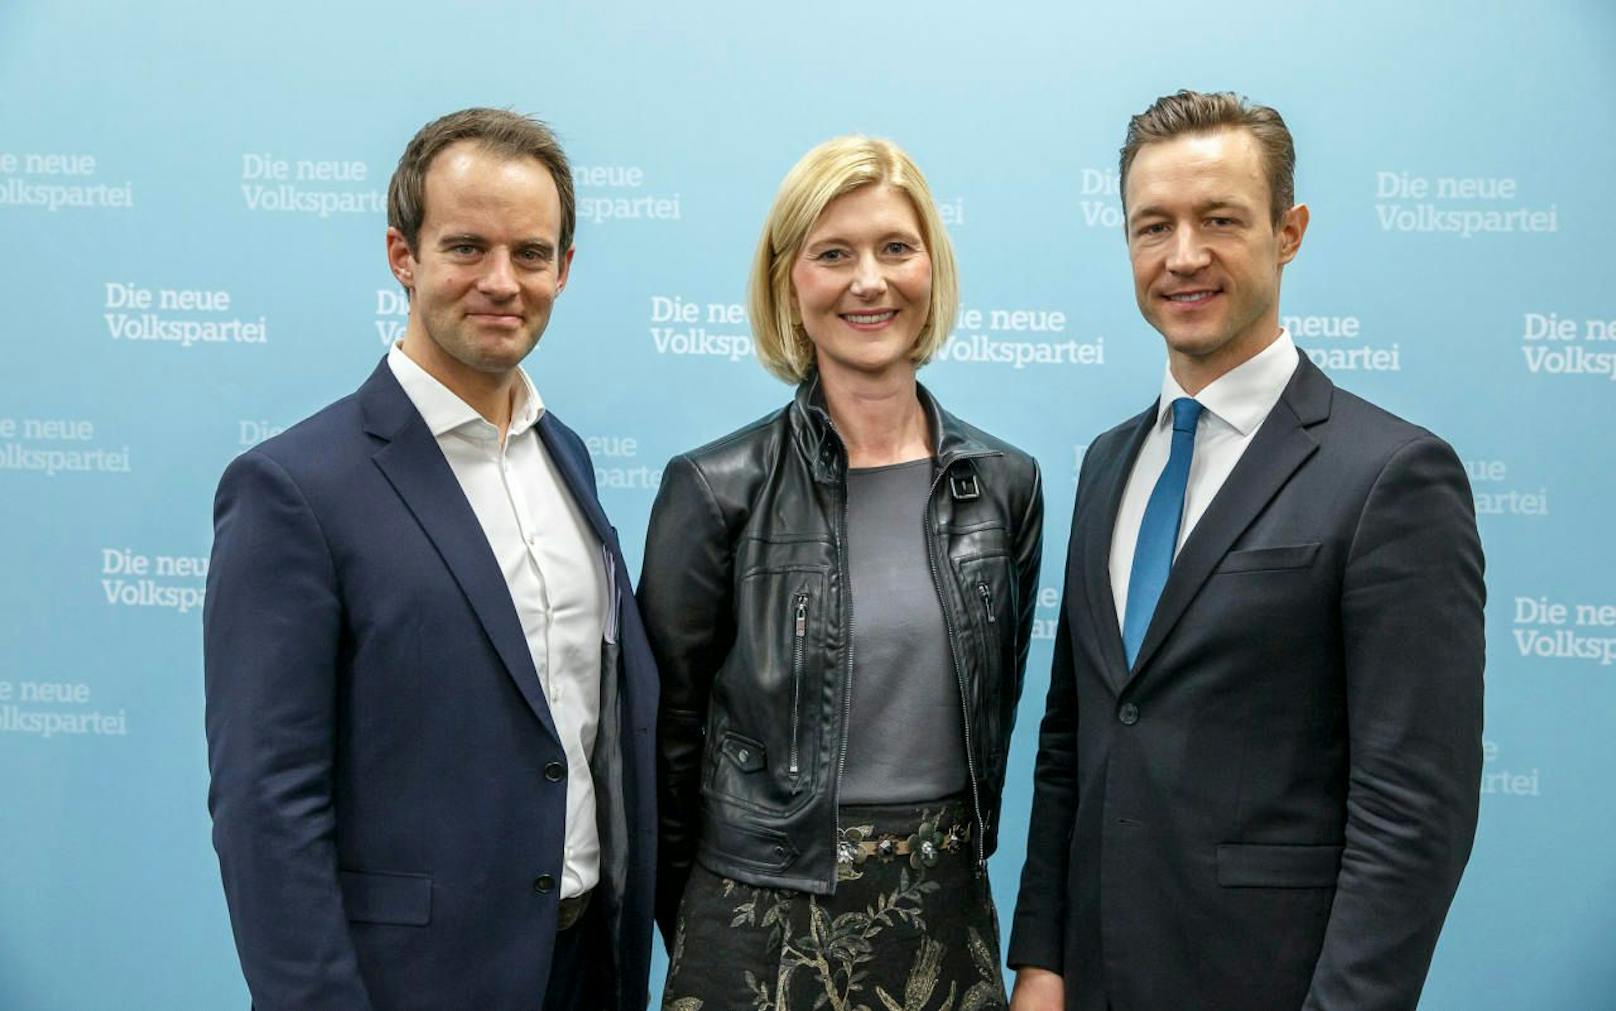 Personalrochaden in der ÖVP Wien: Markus Wölbitsch (Bild links) wird neuer Nicht-Amtsführender Stadtrat, Bernadette Arnoldner wird neue Landesparteigeschäftsführerin, Kanzleramtsminister Gernot Blümel (Bild rechts) wird die ÖVP Wien als Spitzenkandidat in die Wahl 2020 führen. 